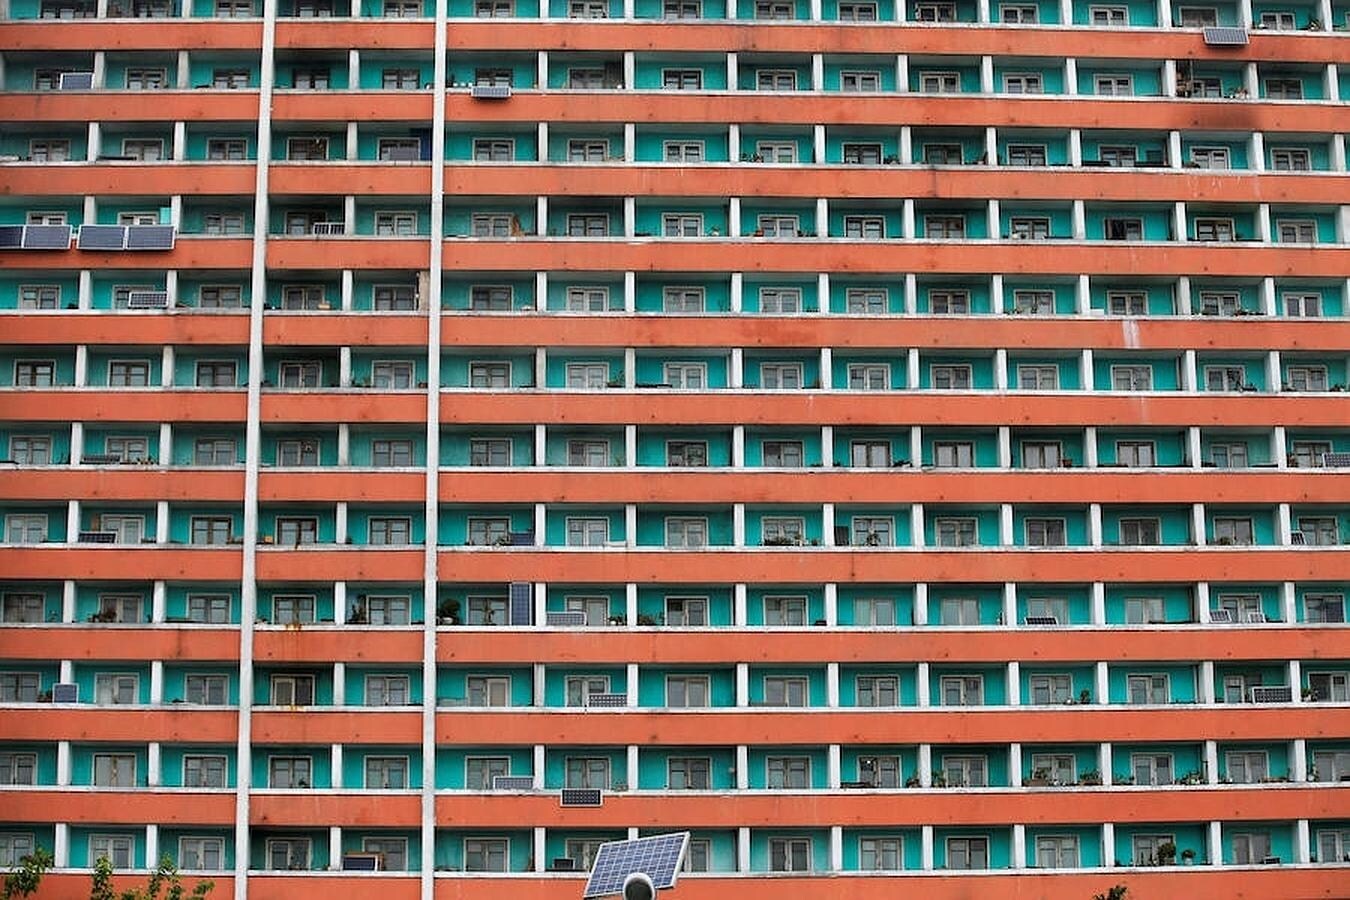 El régimen de Kim Jong-un mostró a la prensa extranjera los paneles solares instalados en el prototipo edificio de viviendas comunista